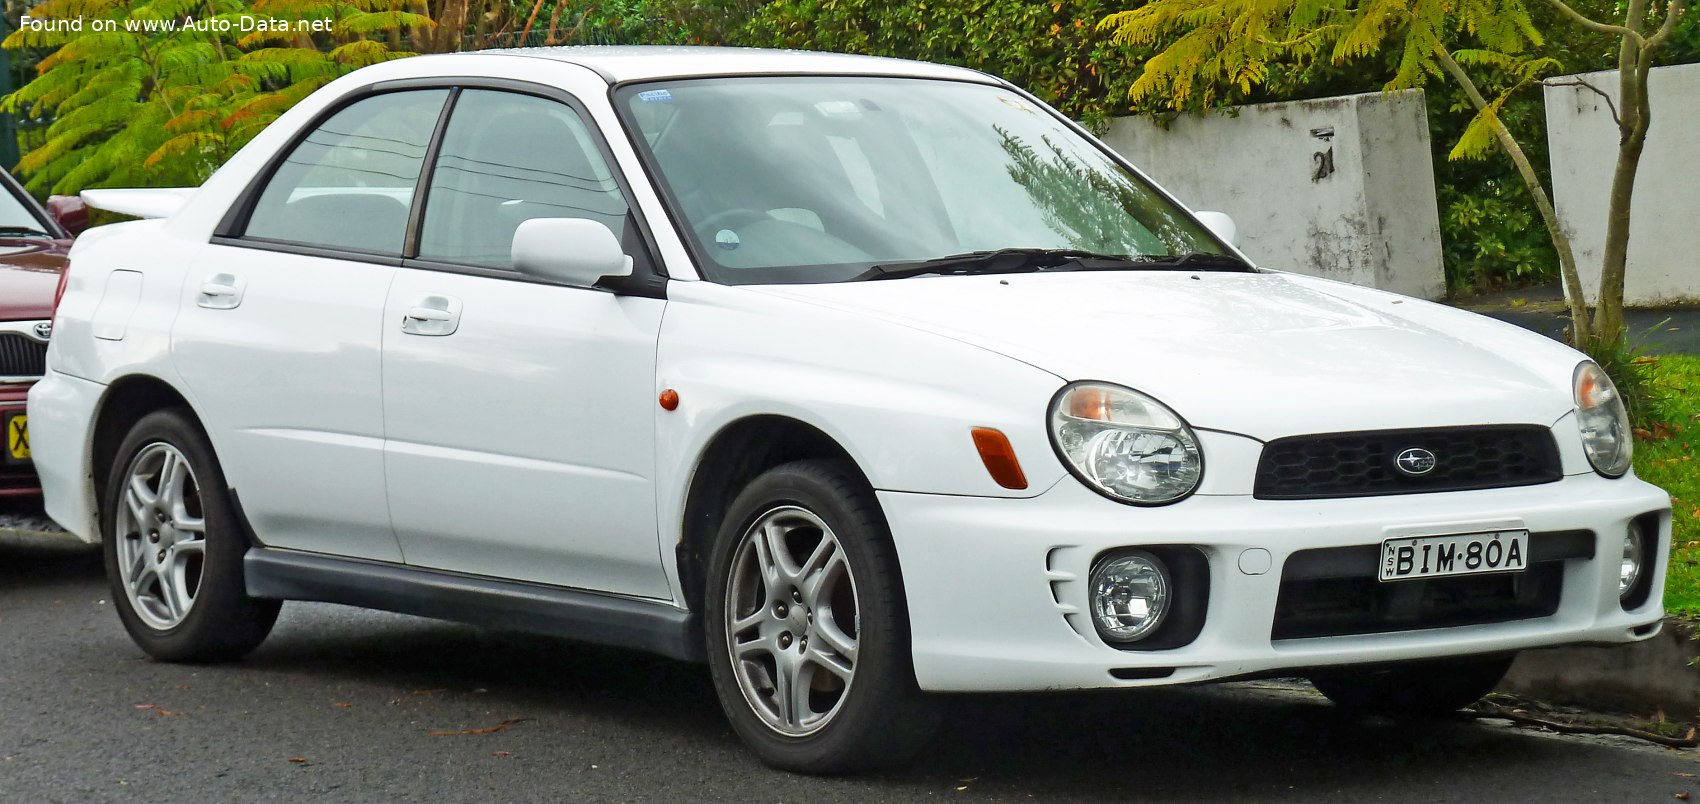 2002 Subaru Impreza II WRX STi 2.0 16V (265 PS) 4WD